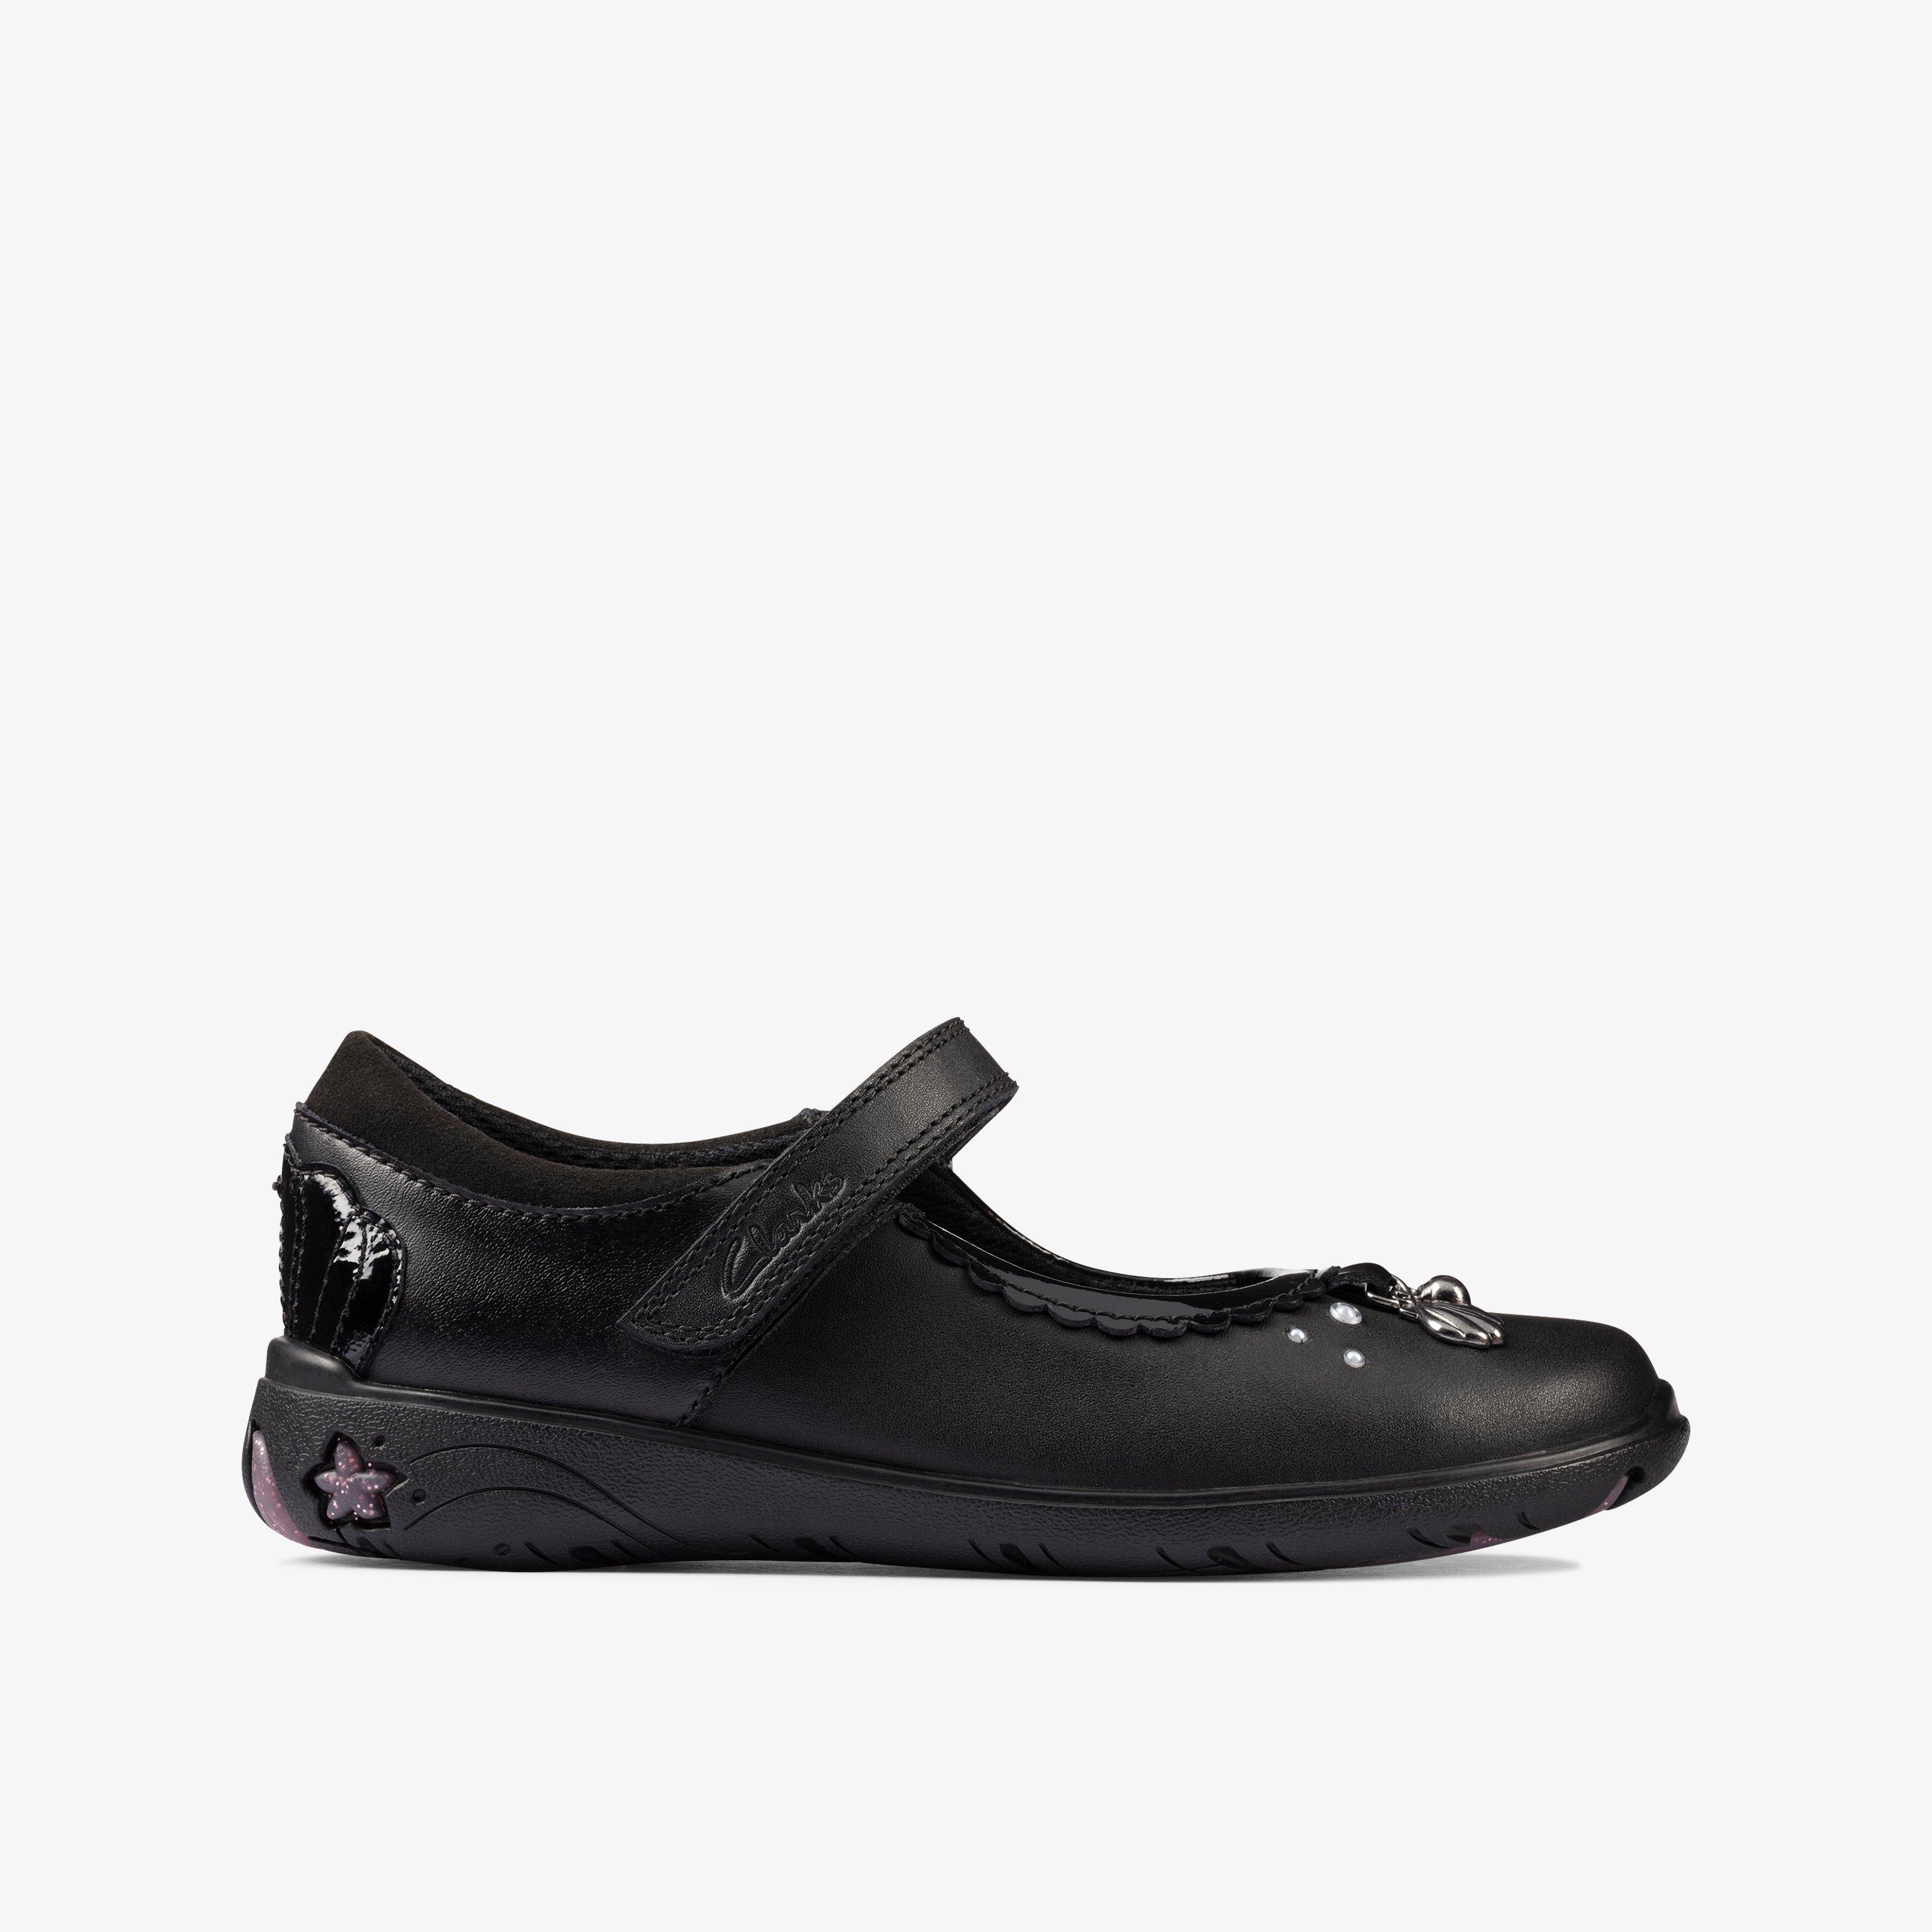 Girls Sea Shimmer Kid Black Leather Shoes | Clarks UK